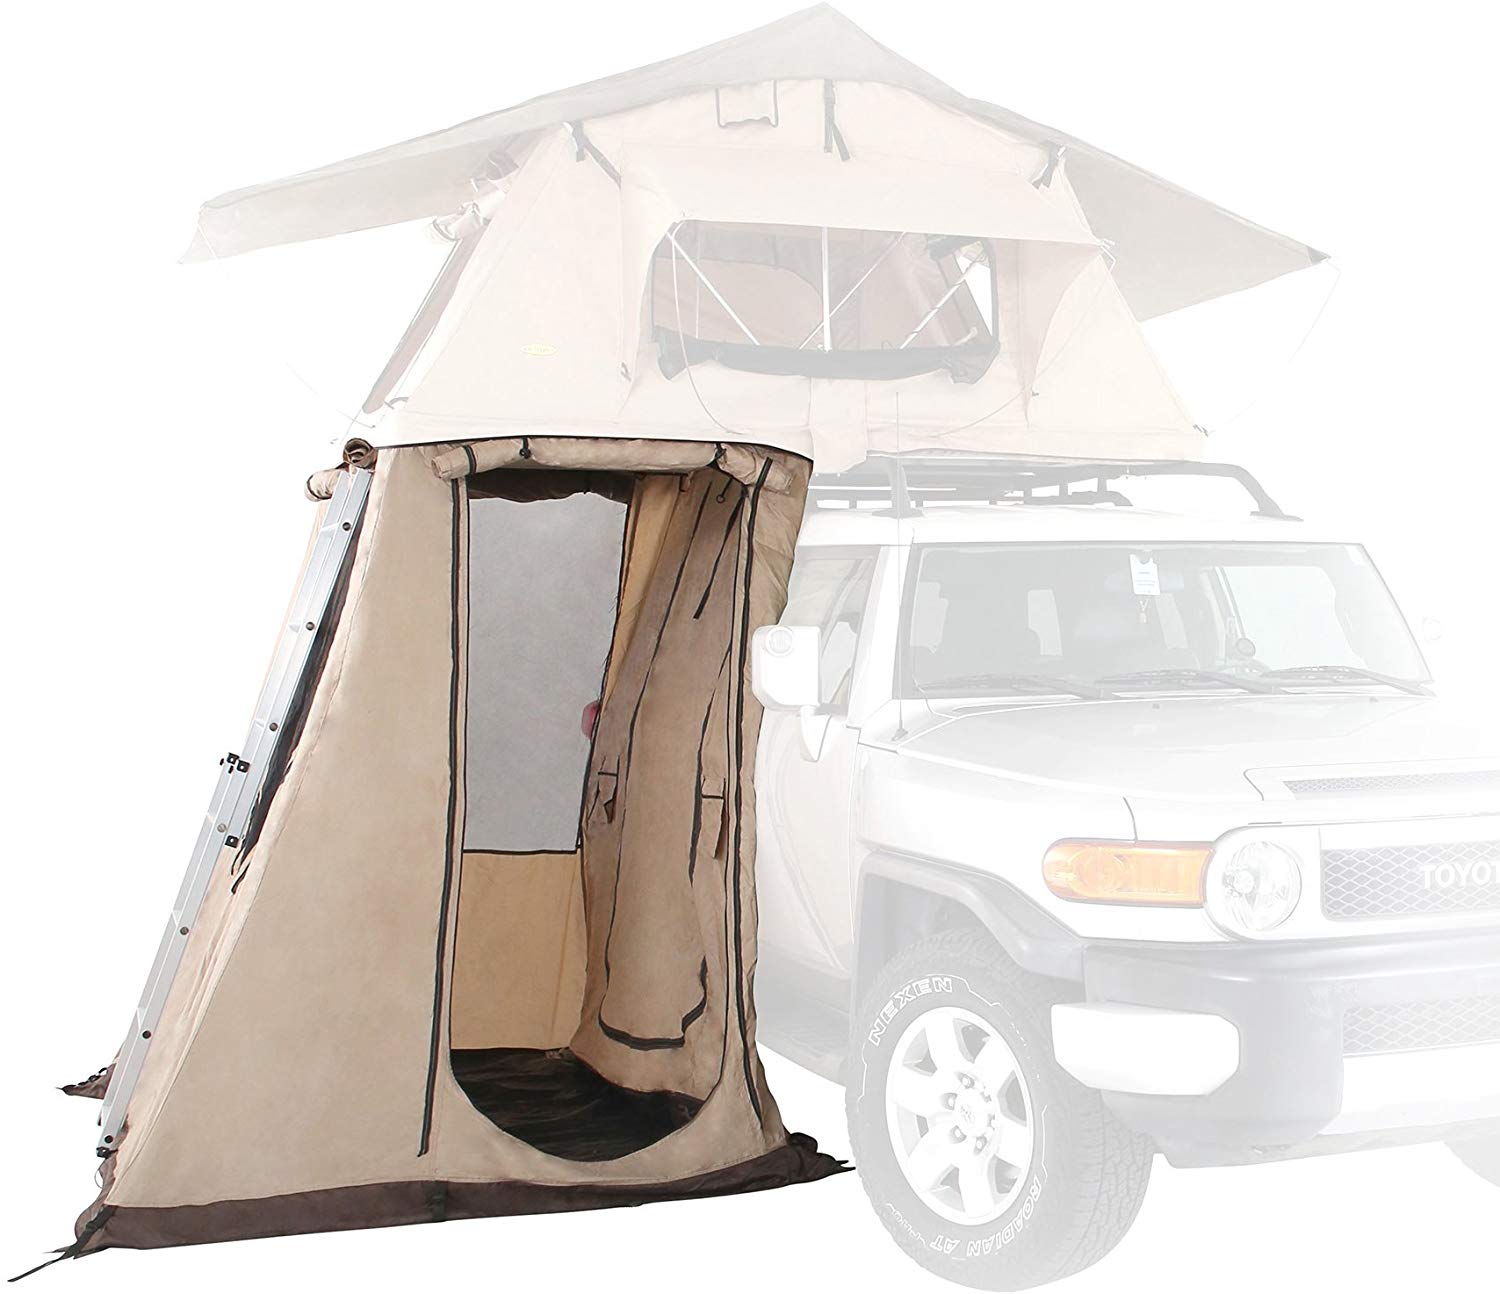 Smittybilt Overlander Accessorries Best Roof Tents